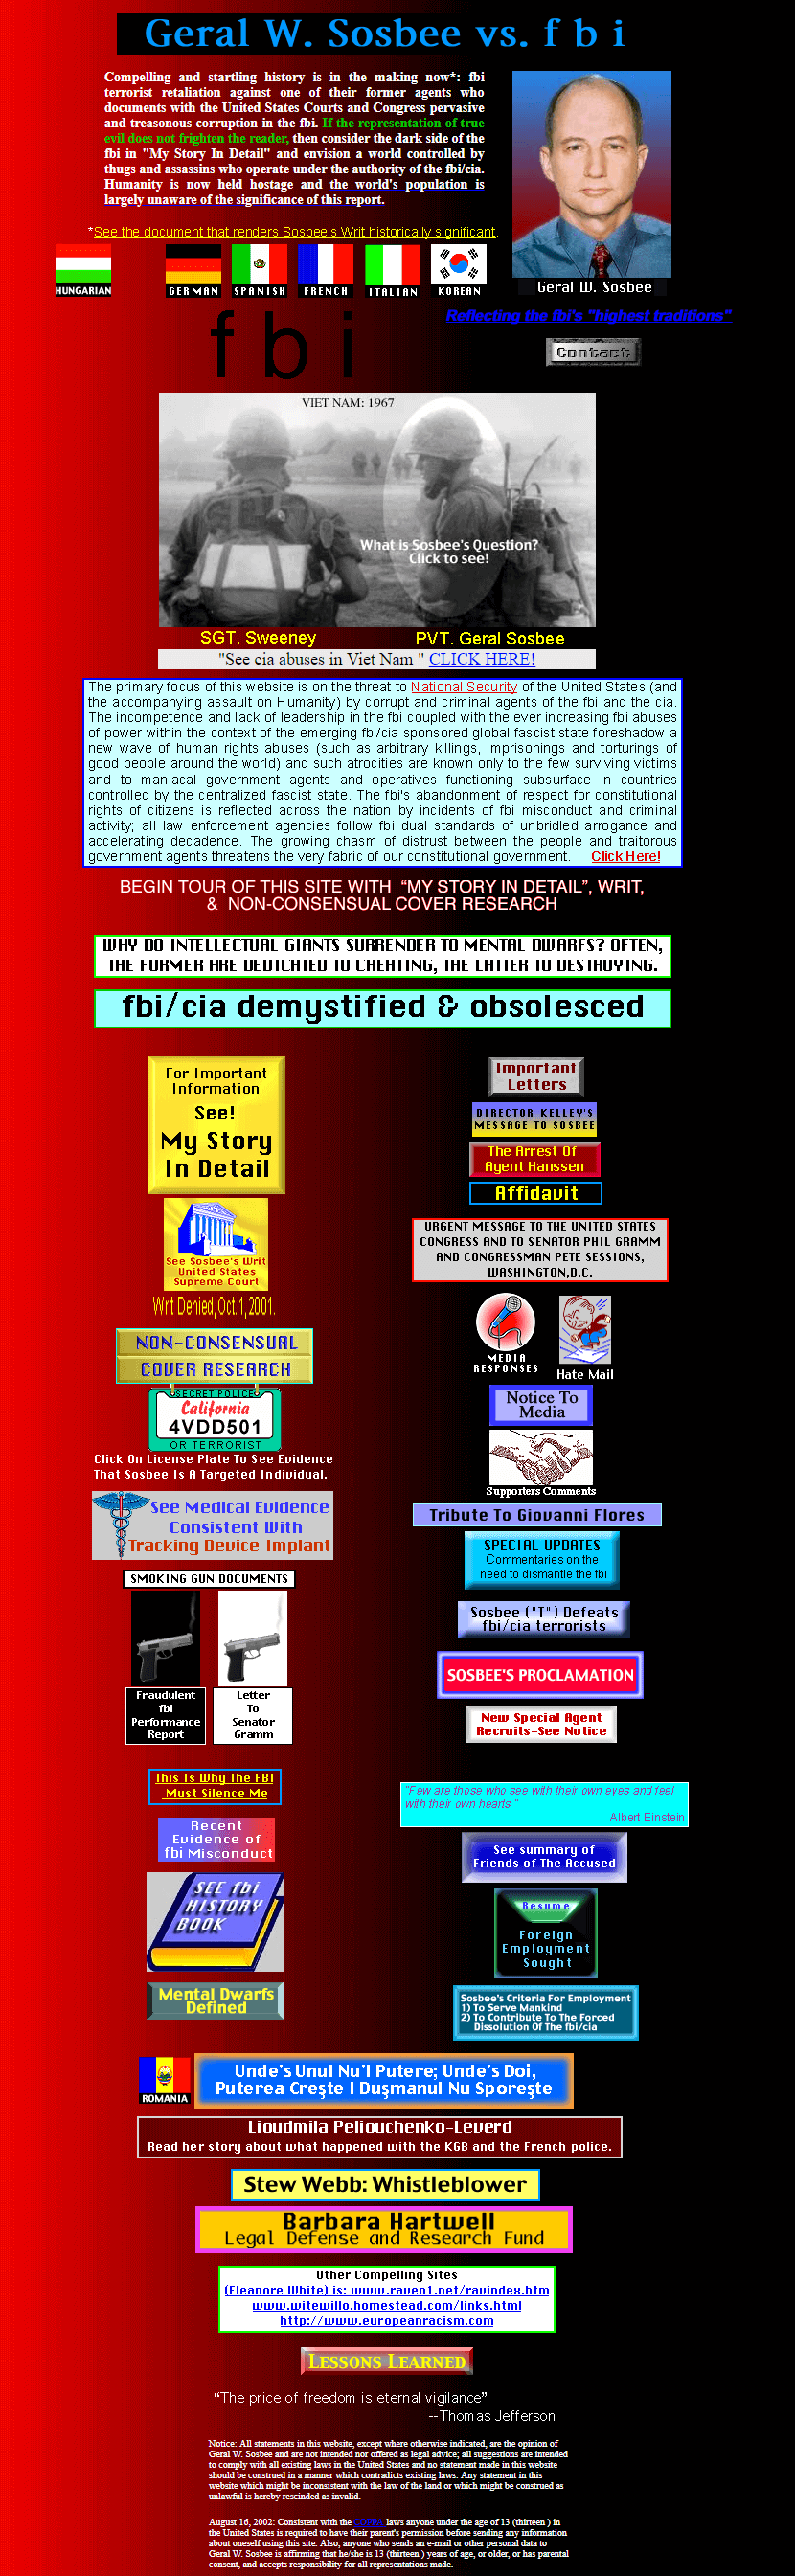 Geral W. Sosbee vs. FBI website in 2003